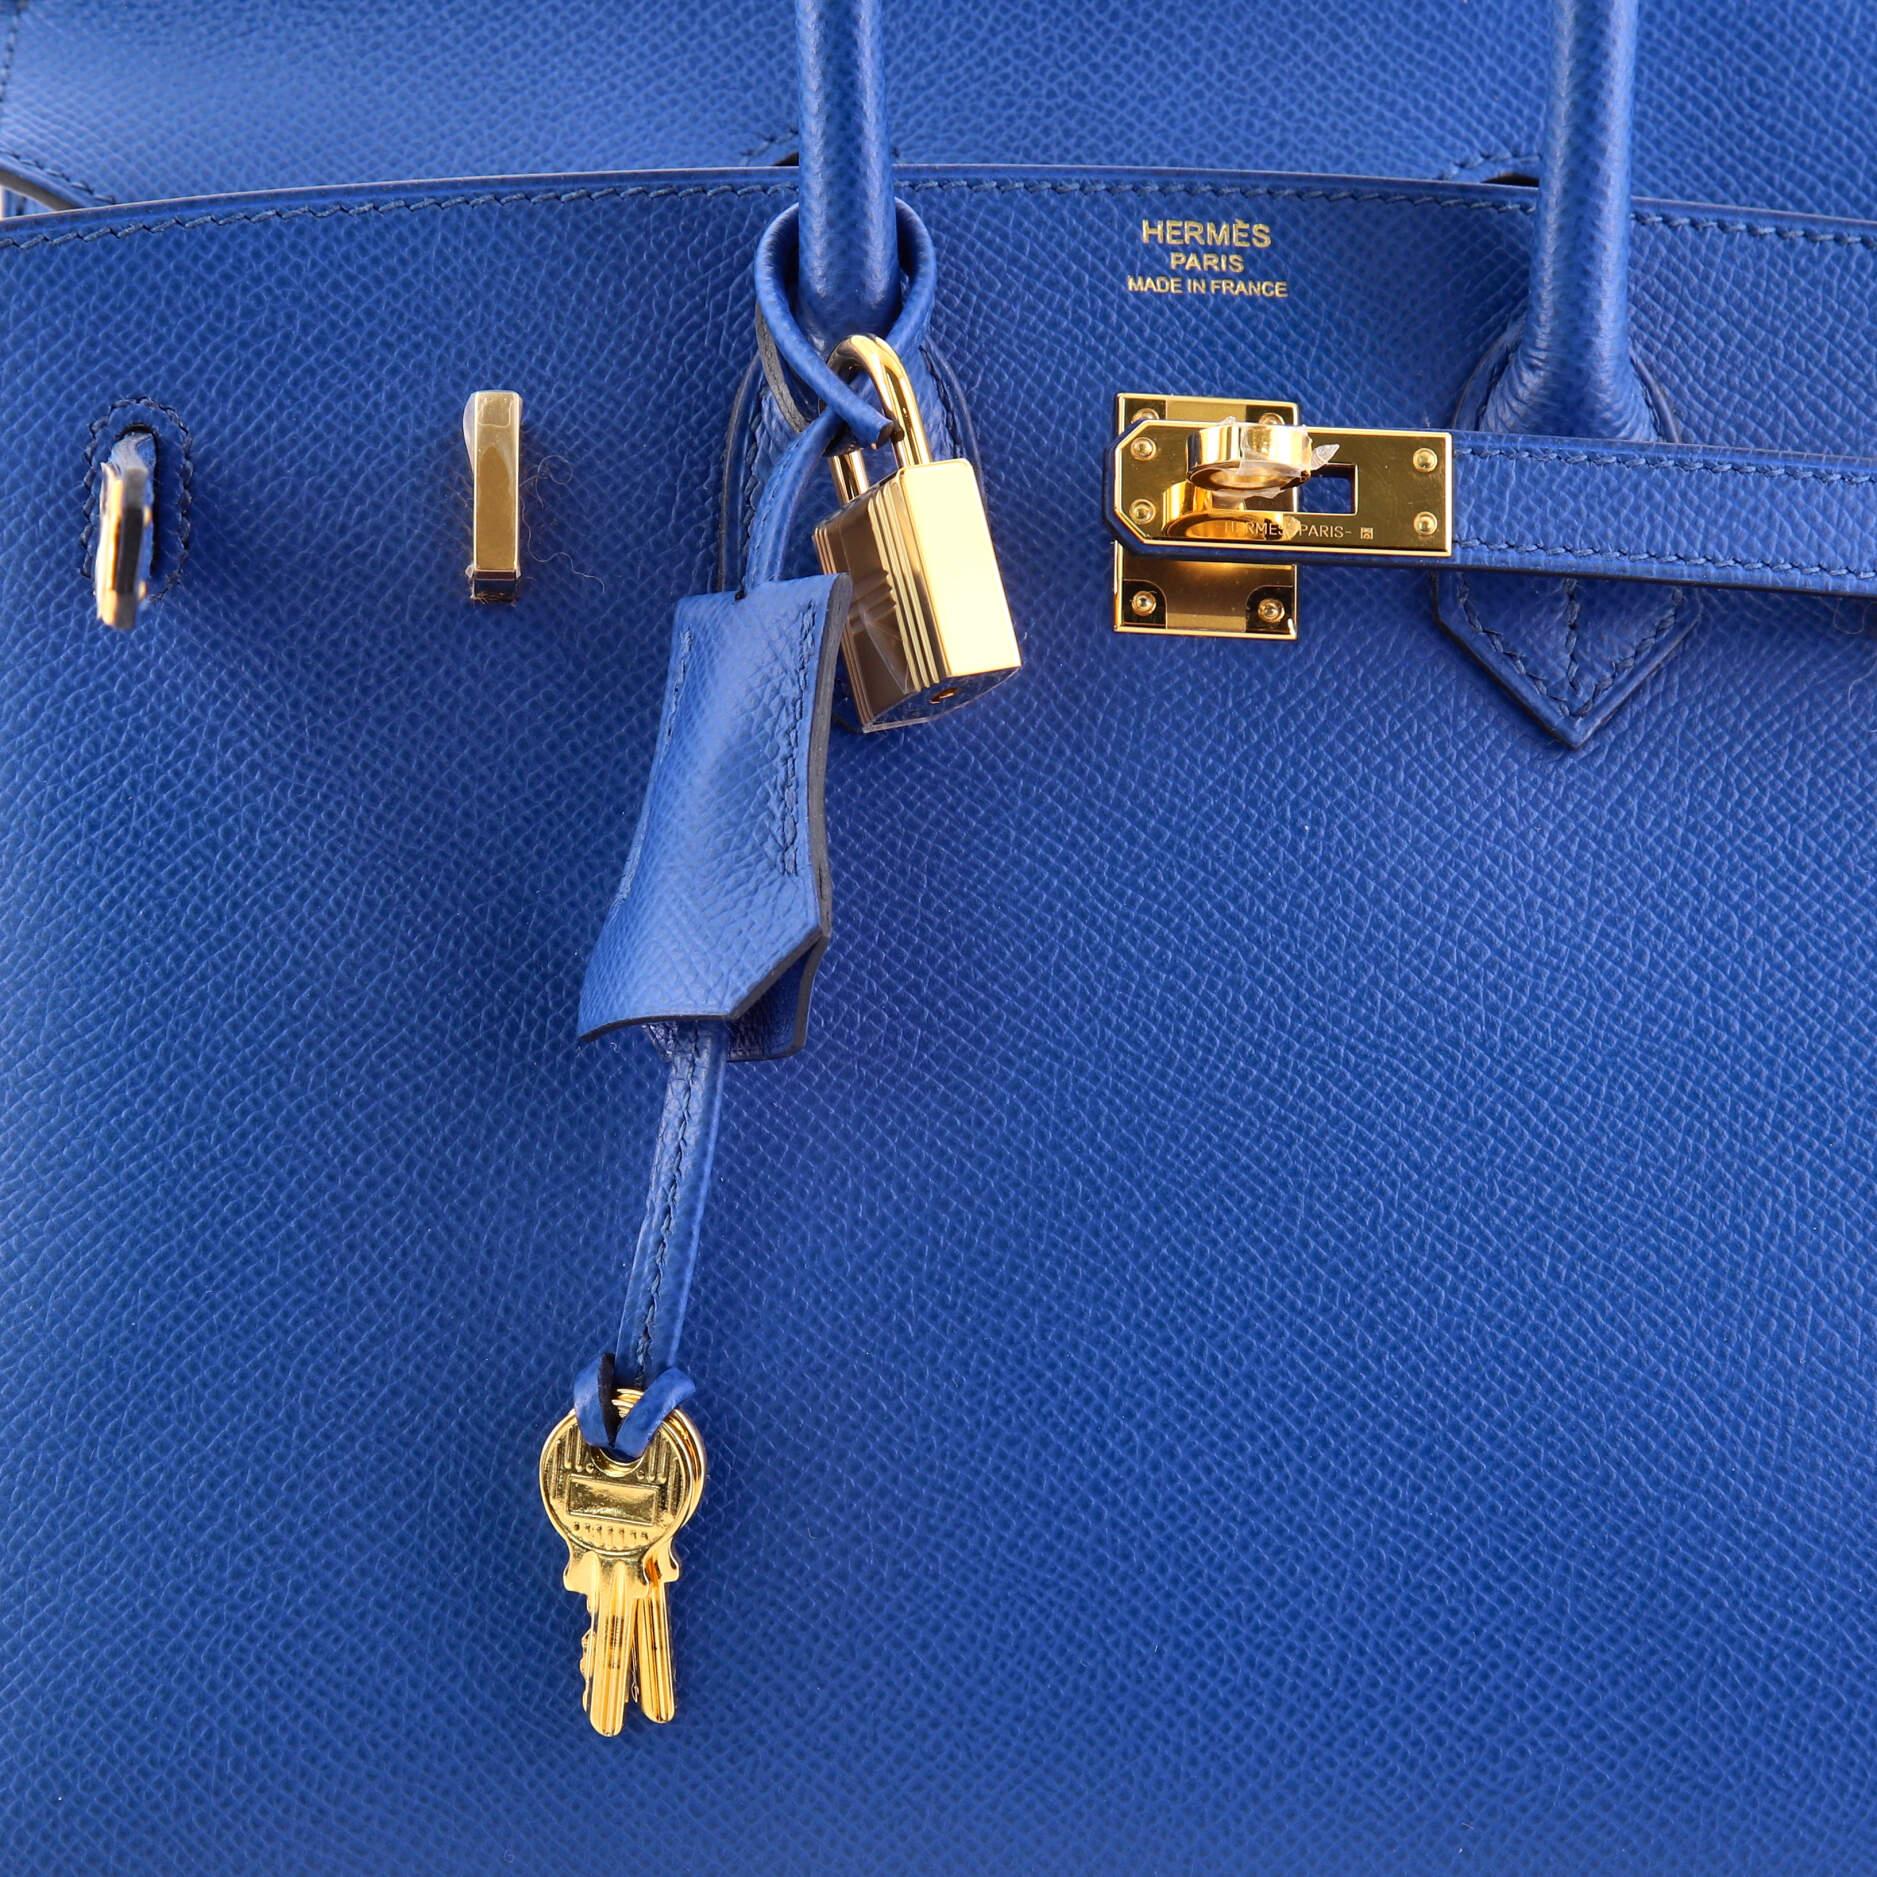 Blue Hermes Birkin Sellier Bag Bleu France Epsom with Gold Hardware 25